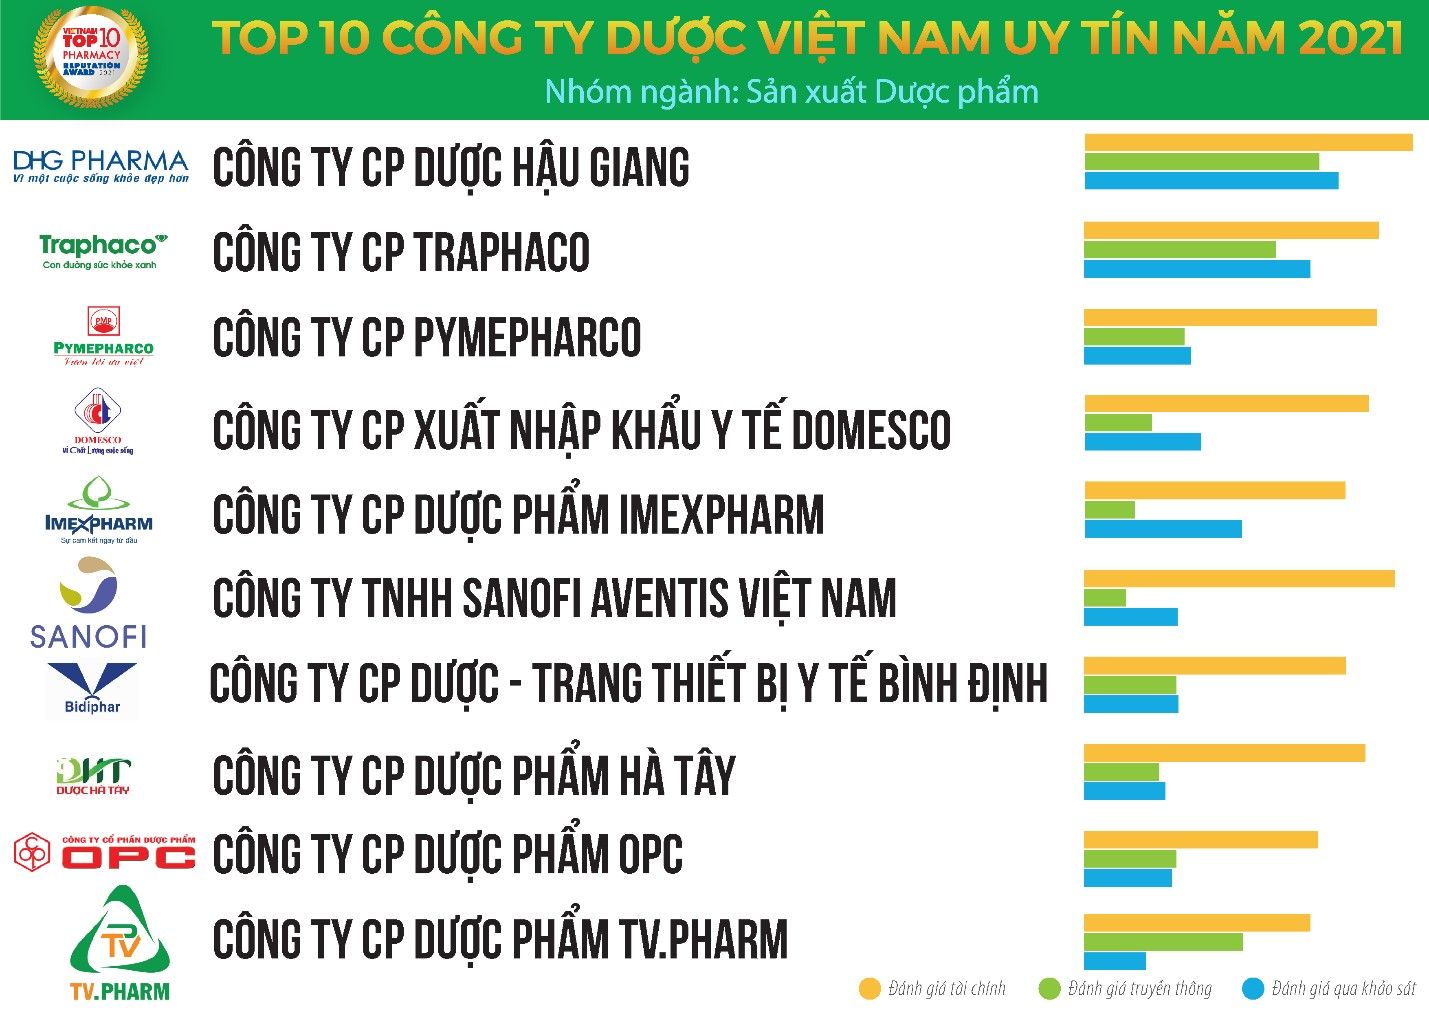 Top 10 công ty dược Việt Nam uy tín năm 2021